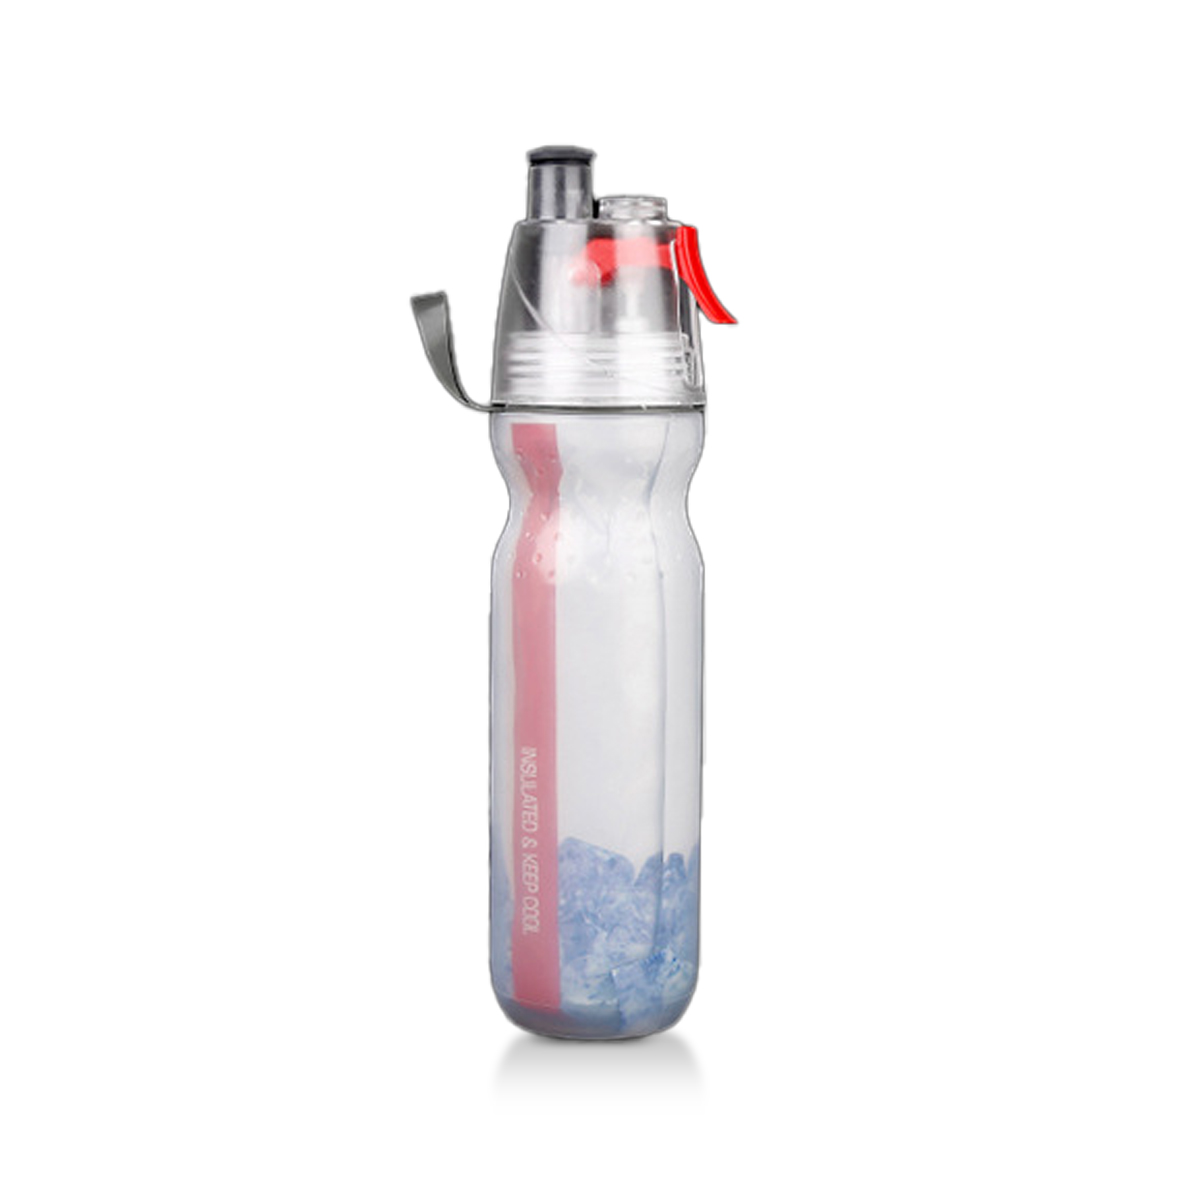 AquaFit Pro Sports Water Bottle